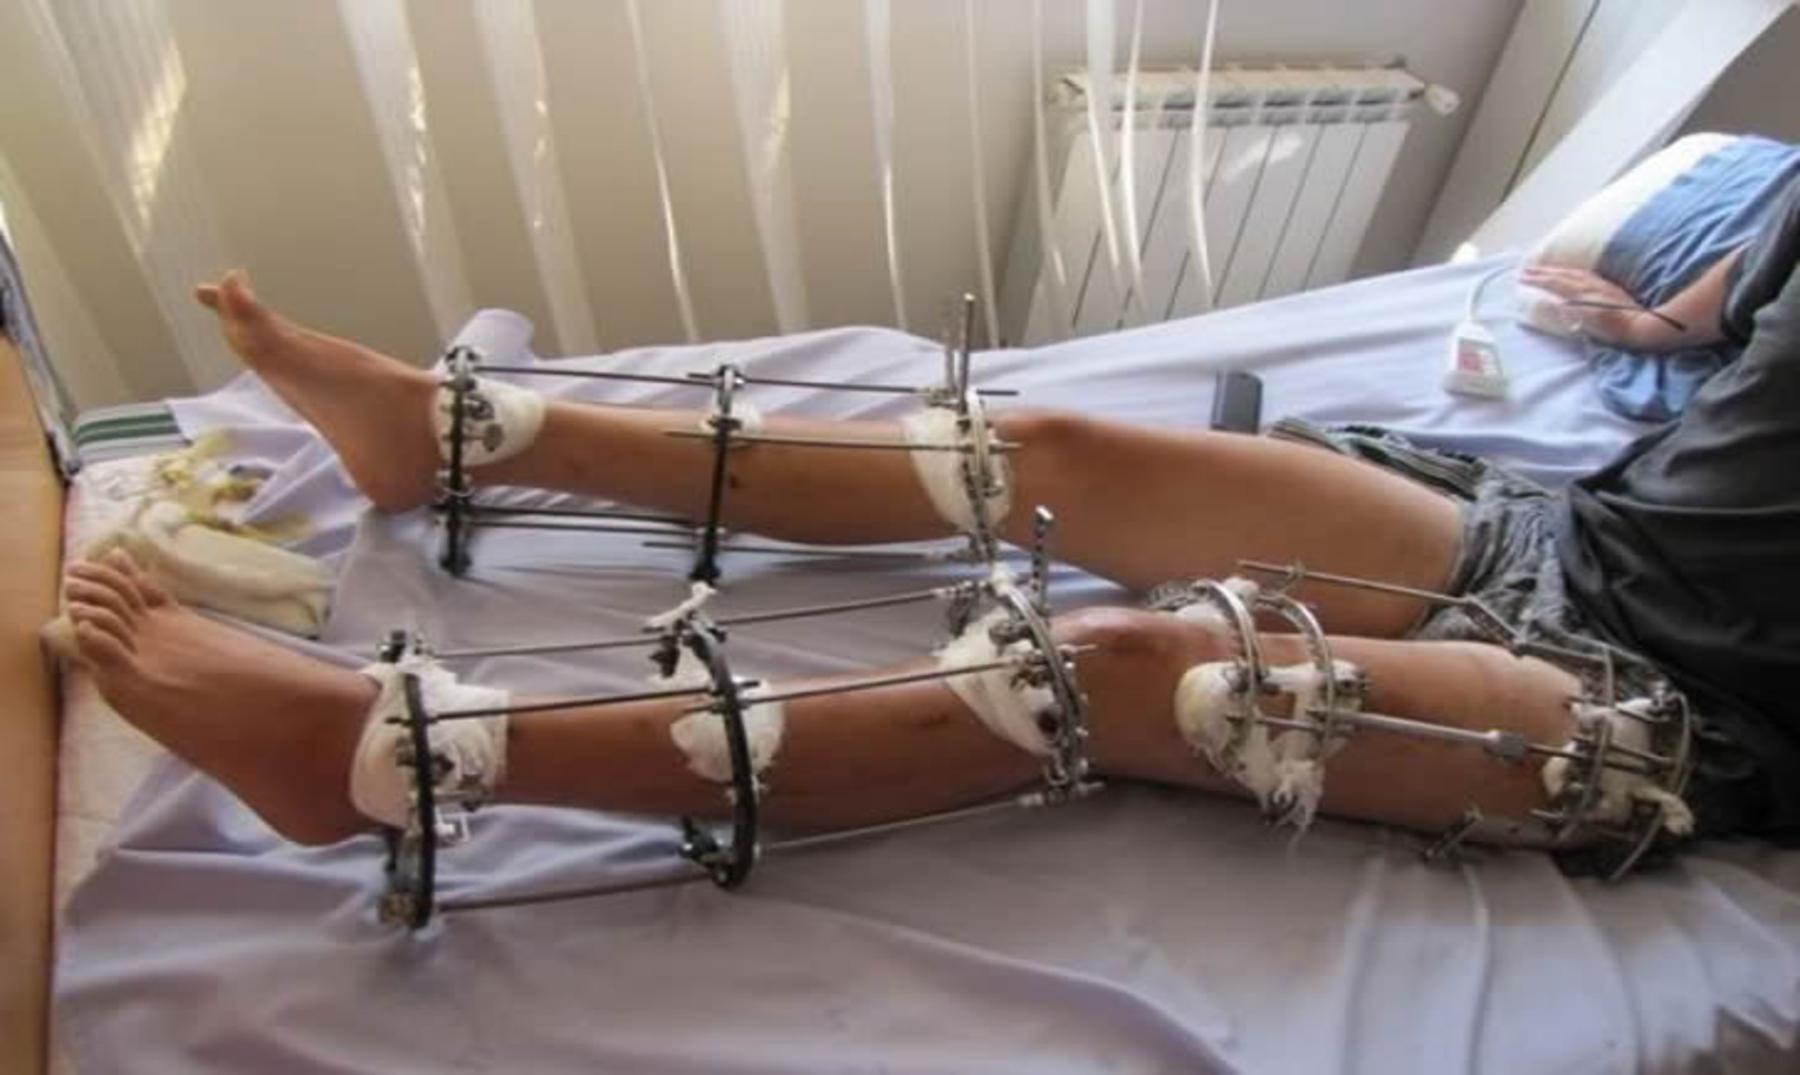 Cirugía estética: "Romperse" las piernas para ser más altos